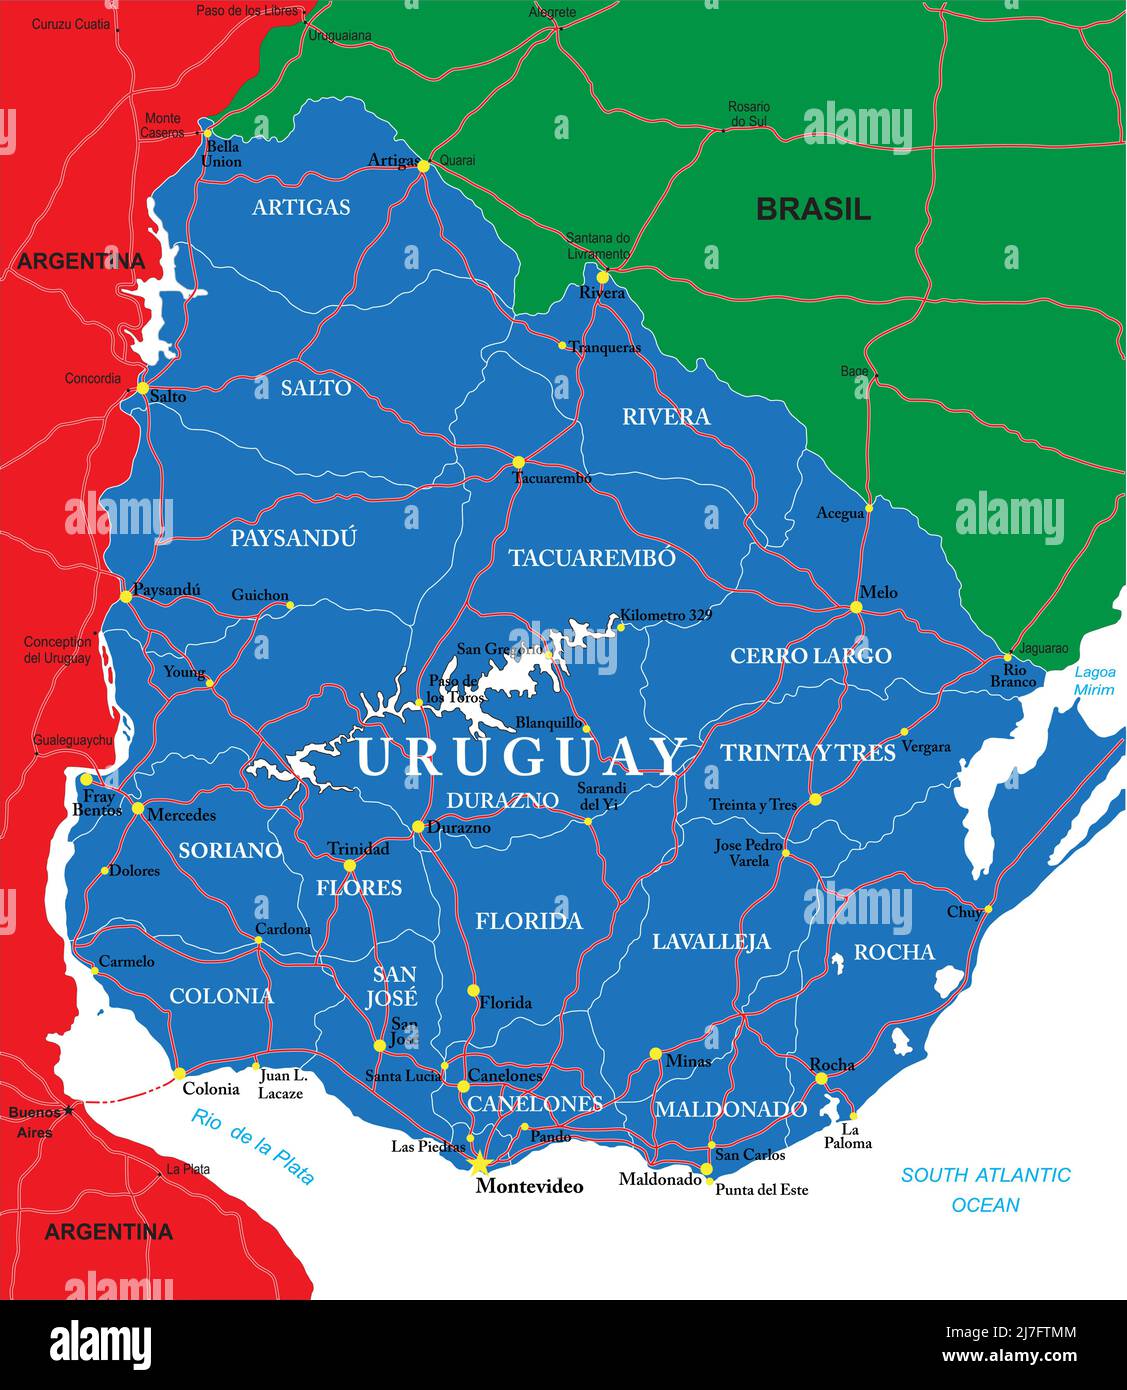 Uruguay Mappa vettoriale dettagliata con confini di paese, nomi di contea, strade principali e una silhouette di stato molto dettagliata. Illustrazione Vettoriale